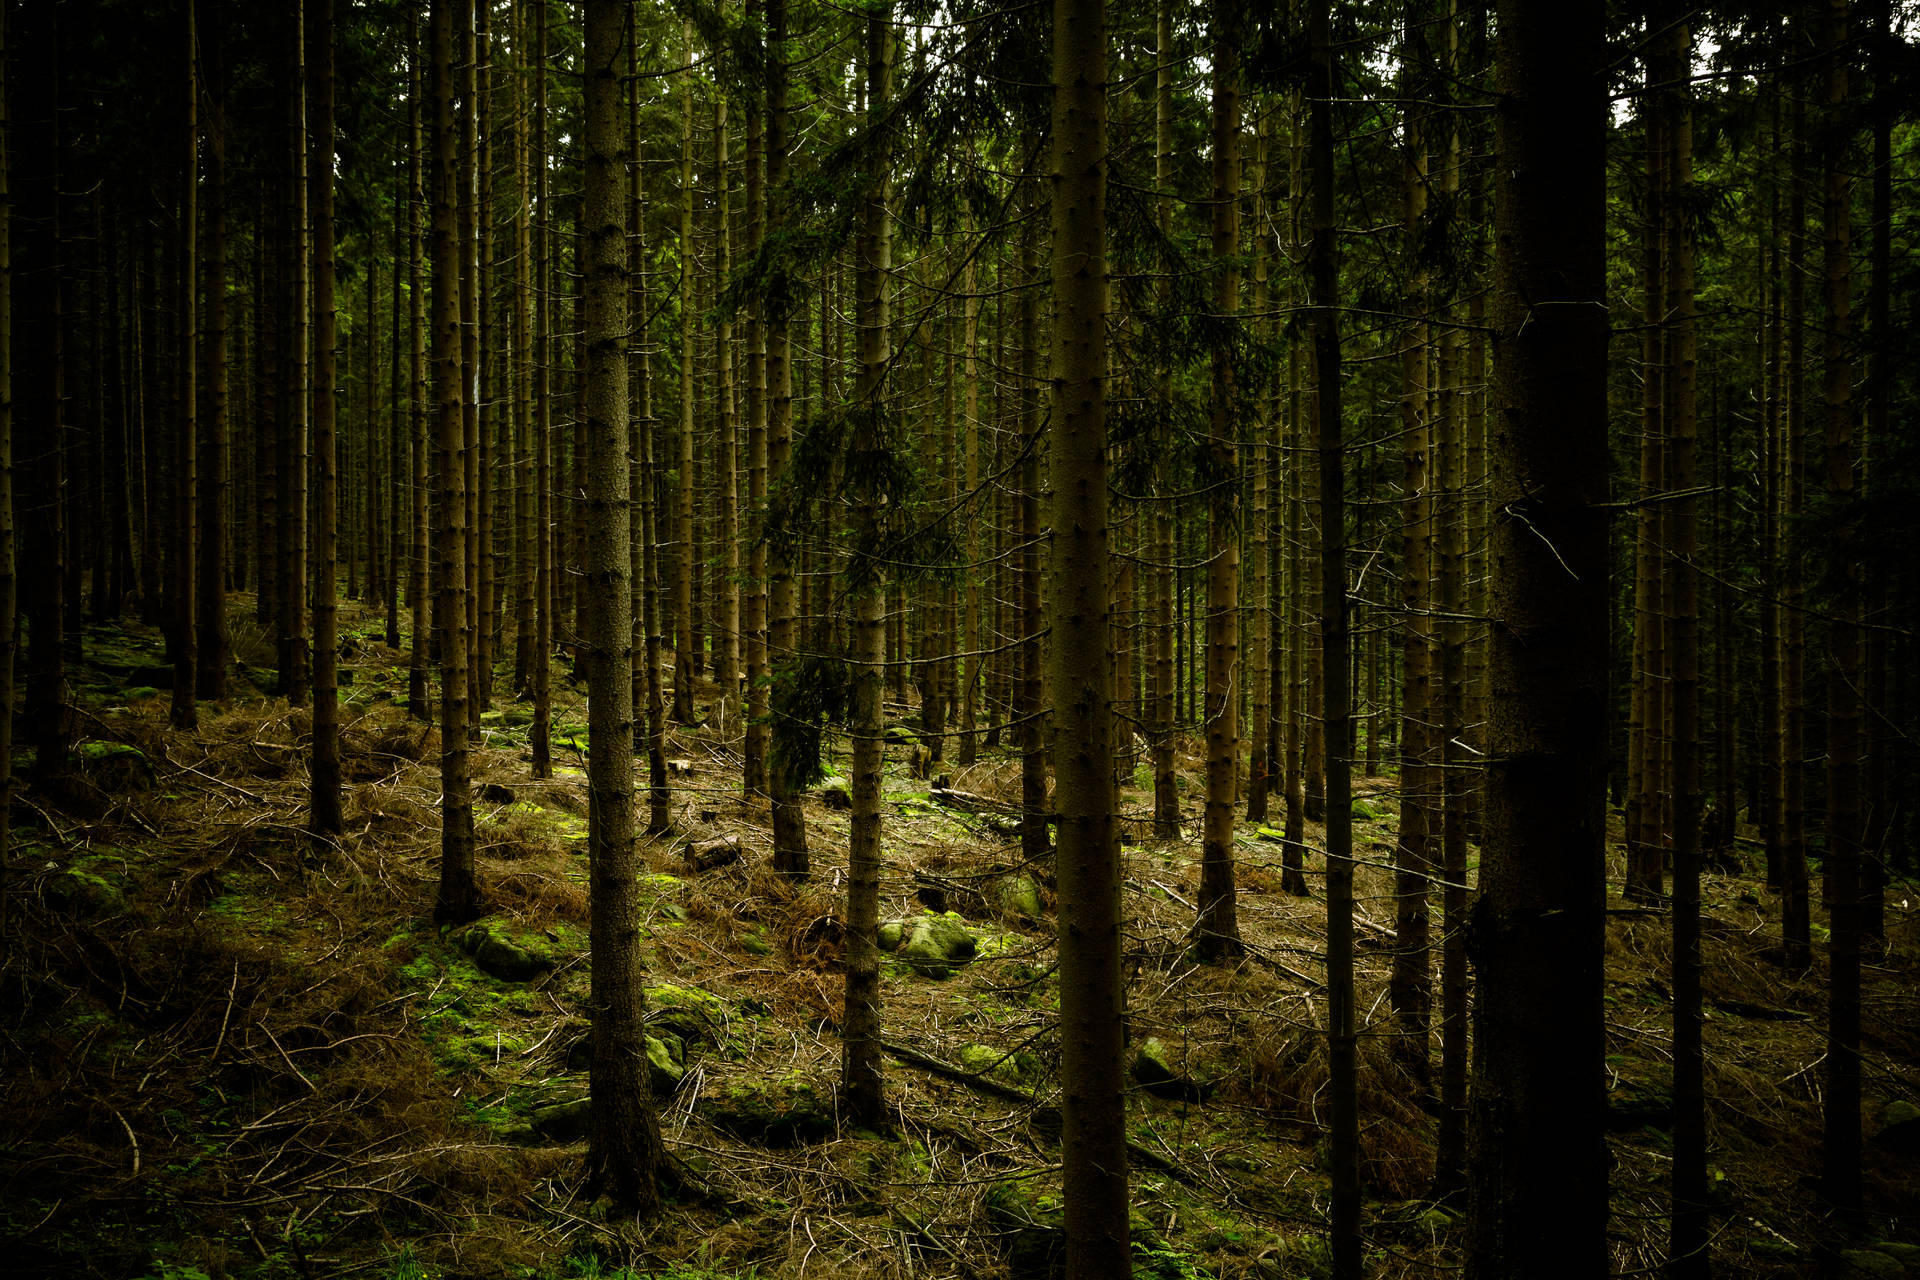 Dark Green Forest Background